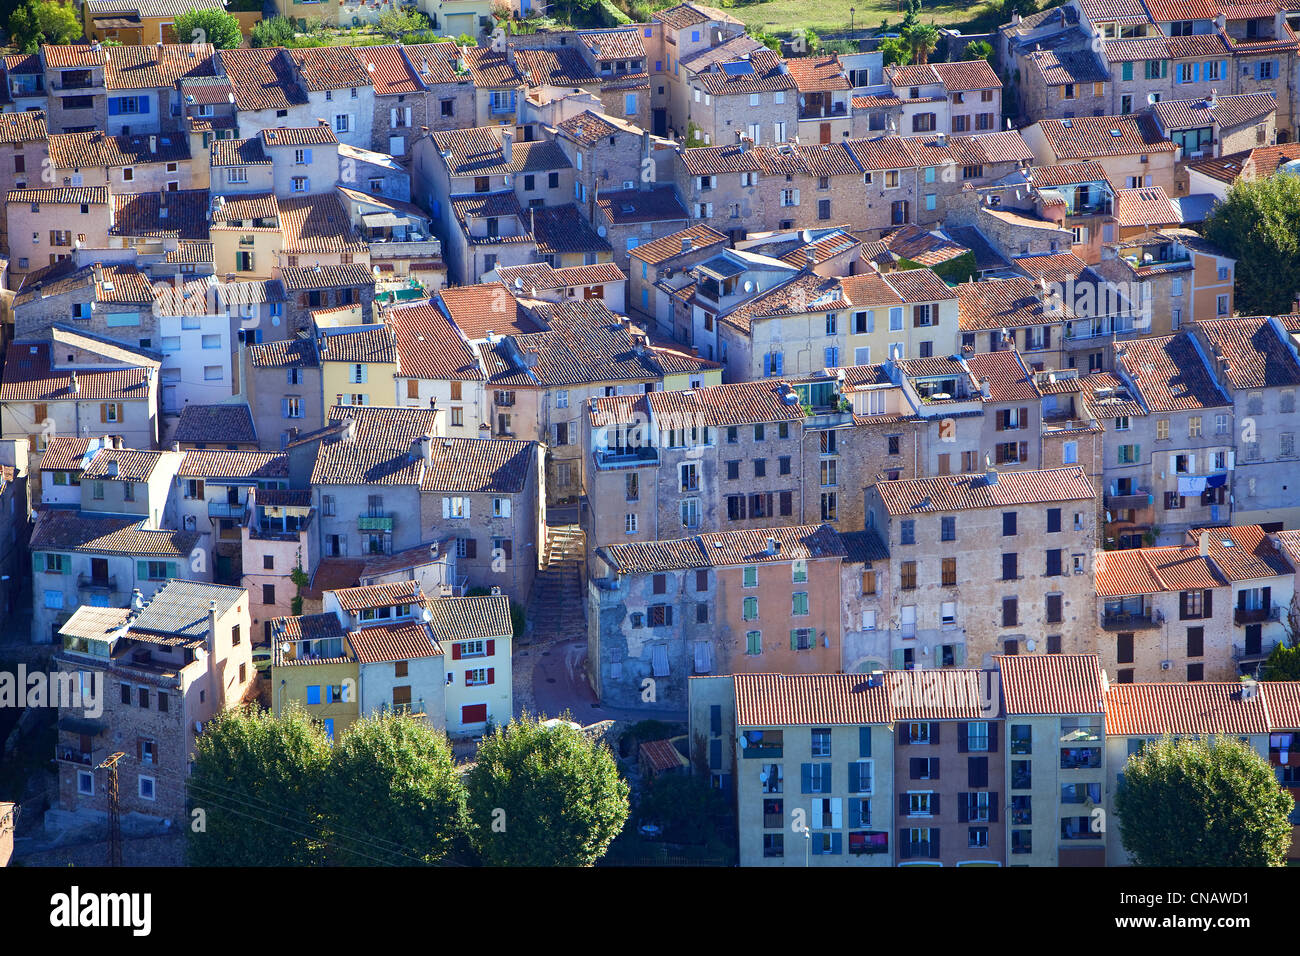 France, Var, Bagnols en Foret (aerial view Stock Photo: 47567997 - Alamy